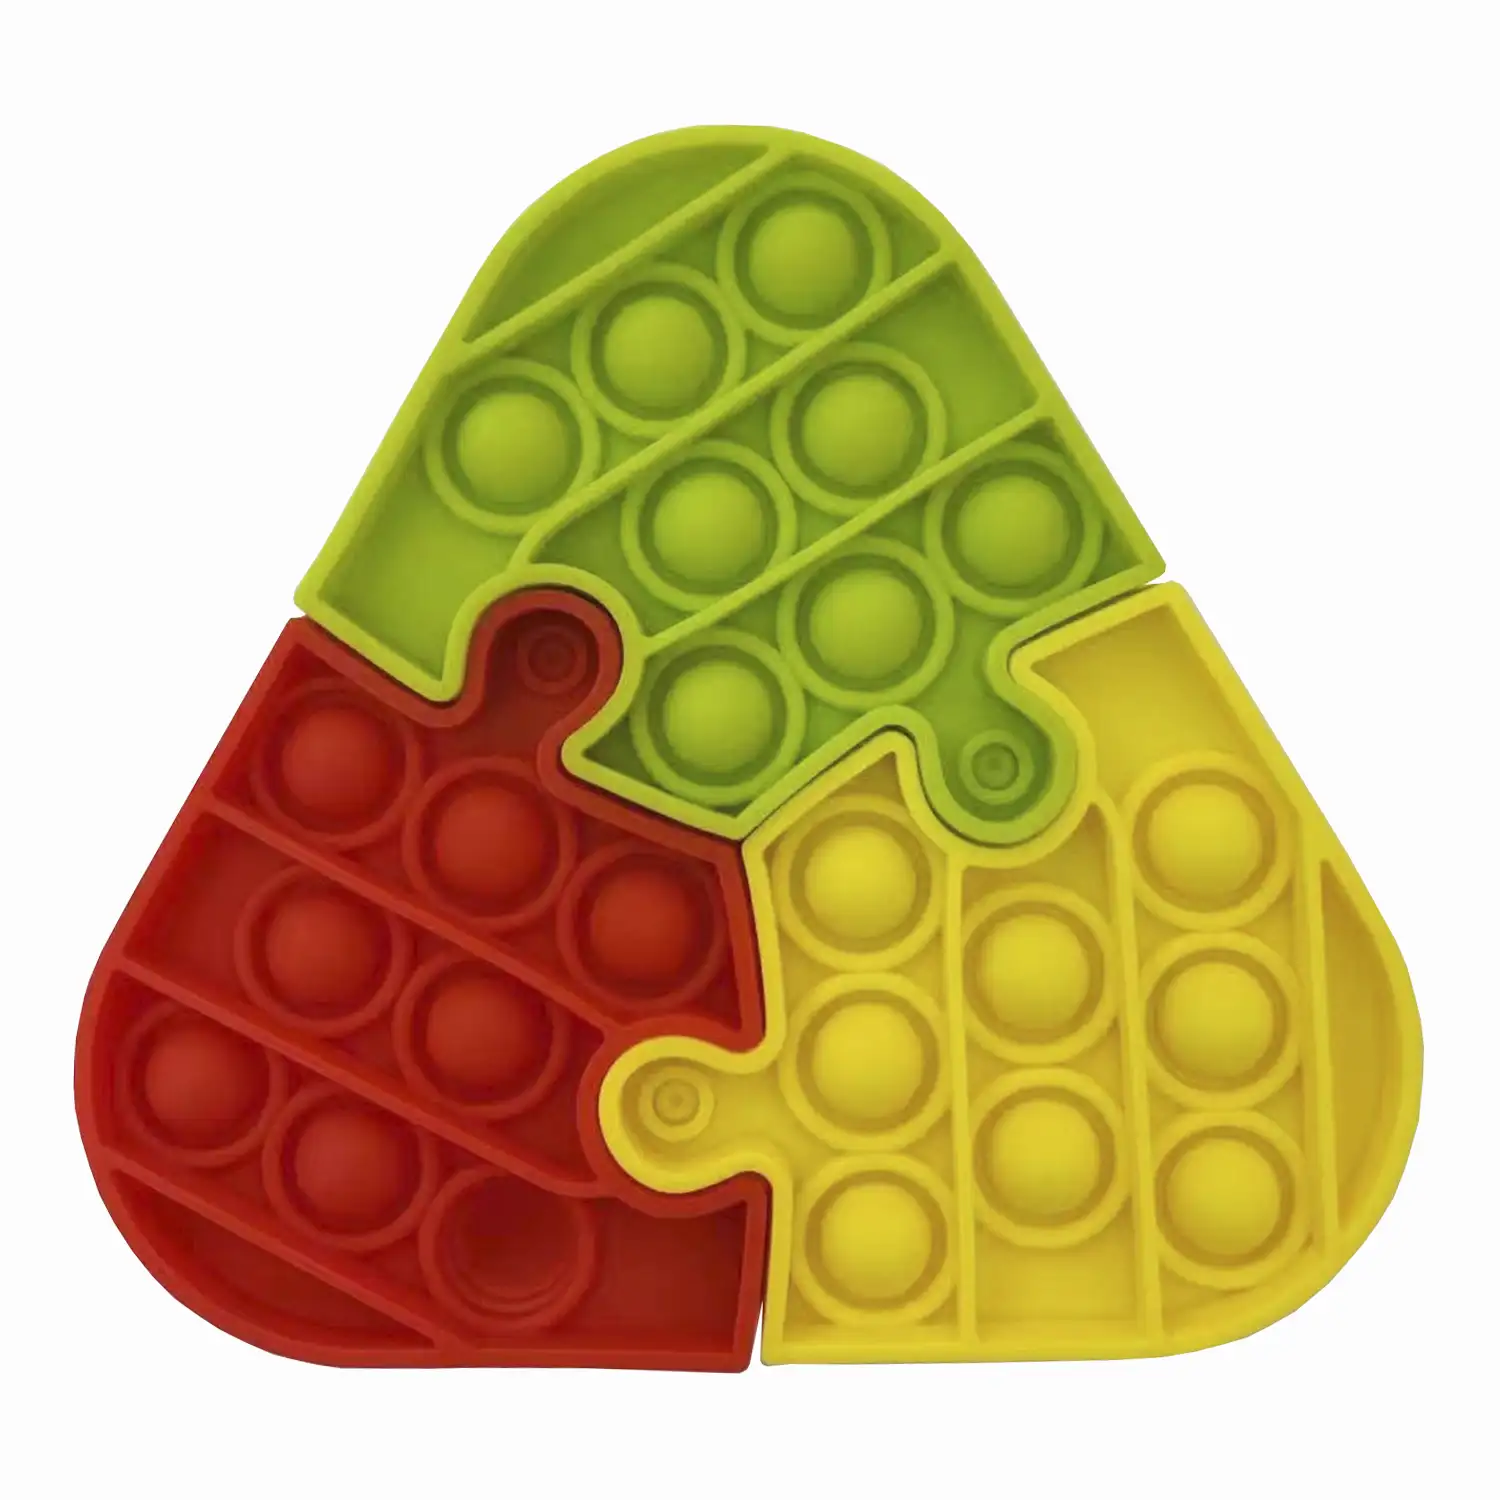 3 PIEZAS Bubble Pop It juguete sensitivo desestresante, burbujas de silicona para apretar y pulsar. Diseño puzzle 3 piezas triangular. Colores aleatorios.